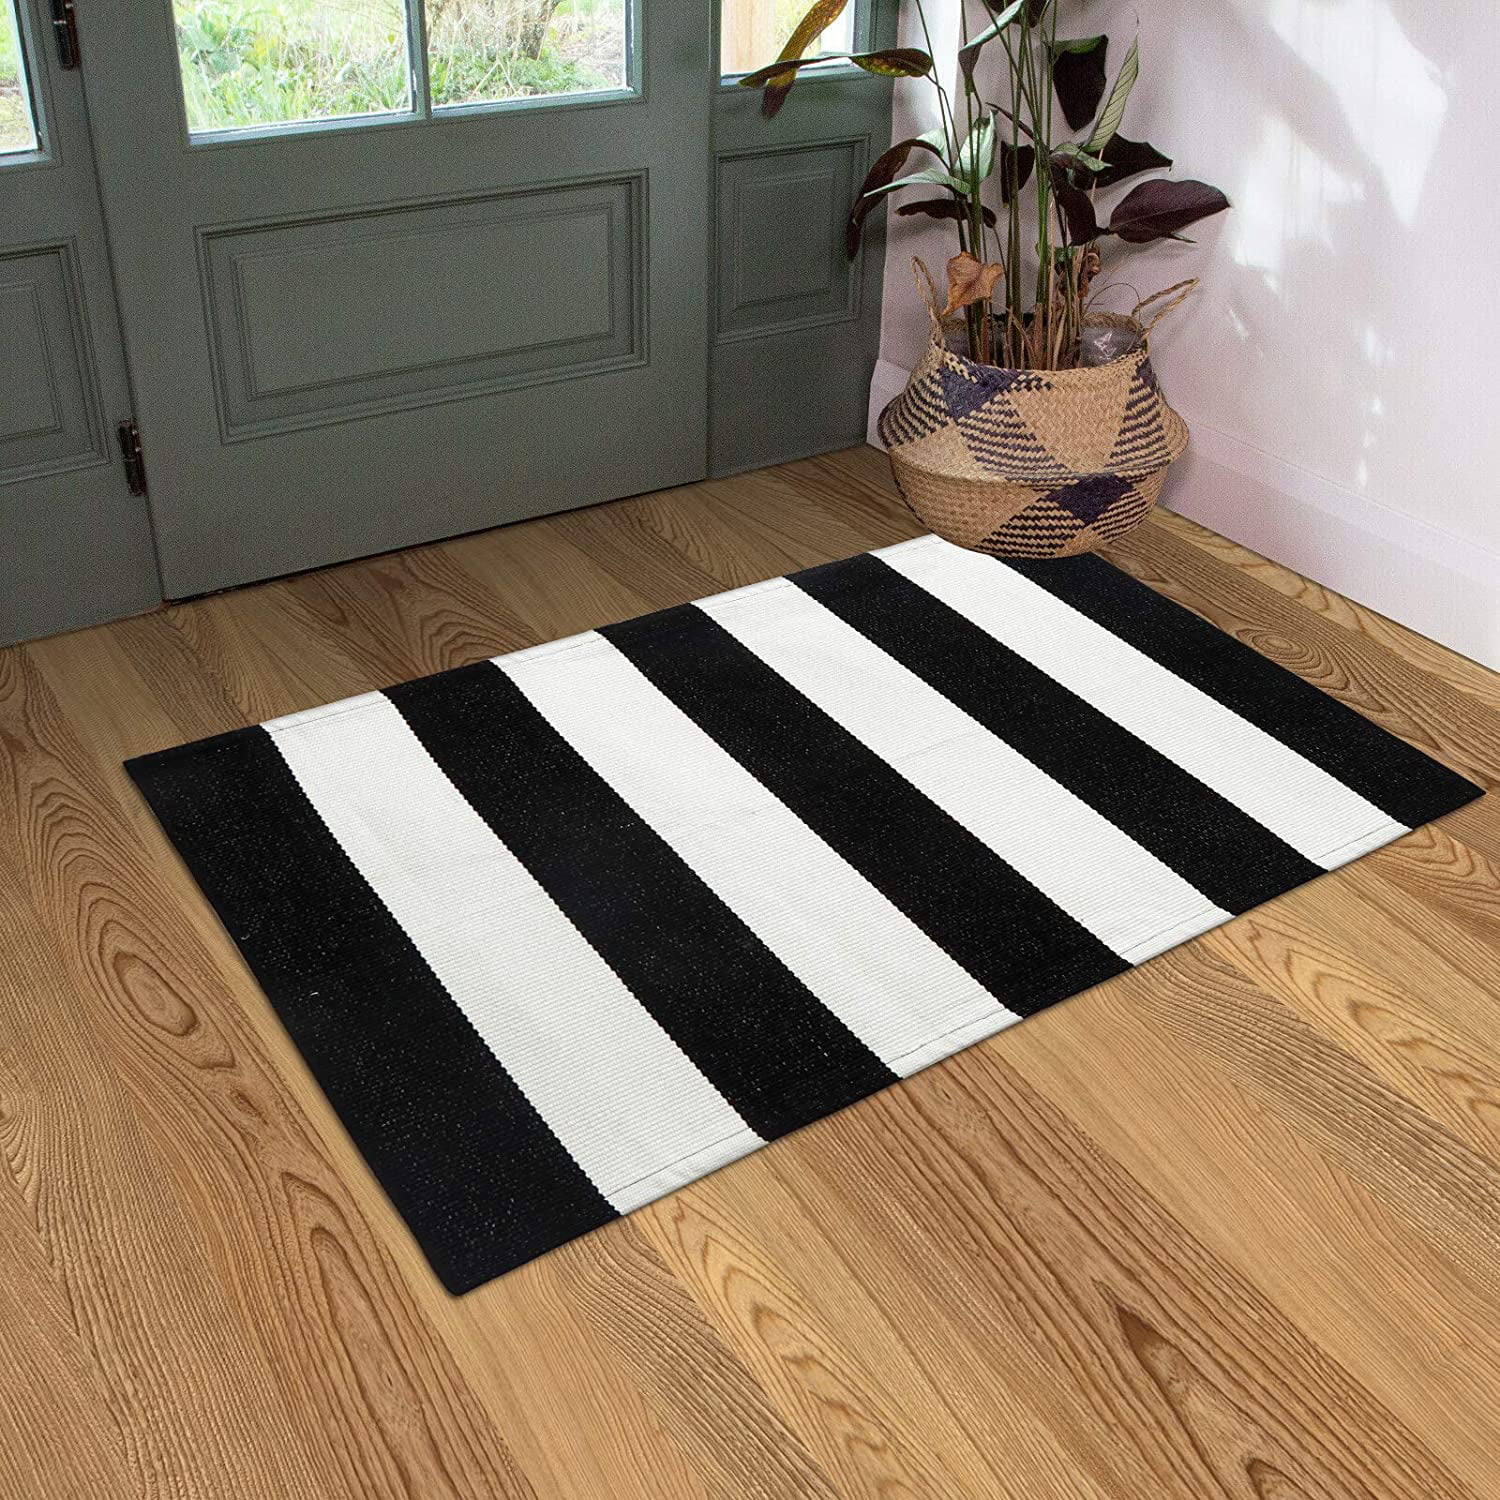 Stripe Kitchen Carpet Cotton Doormat, Black And White Striped Runner Rug